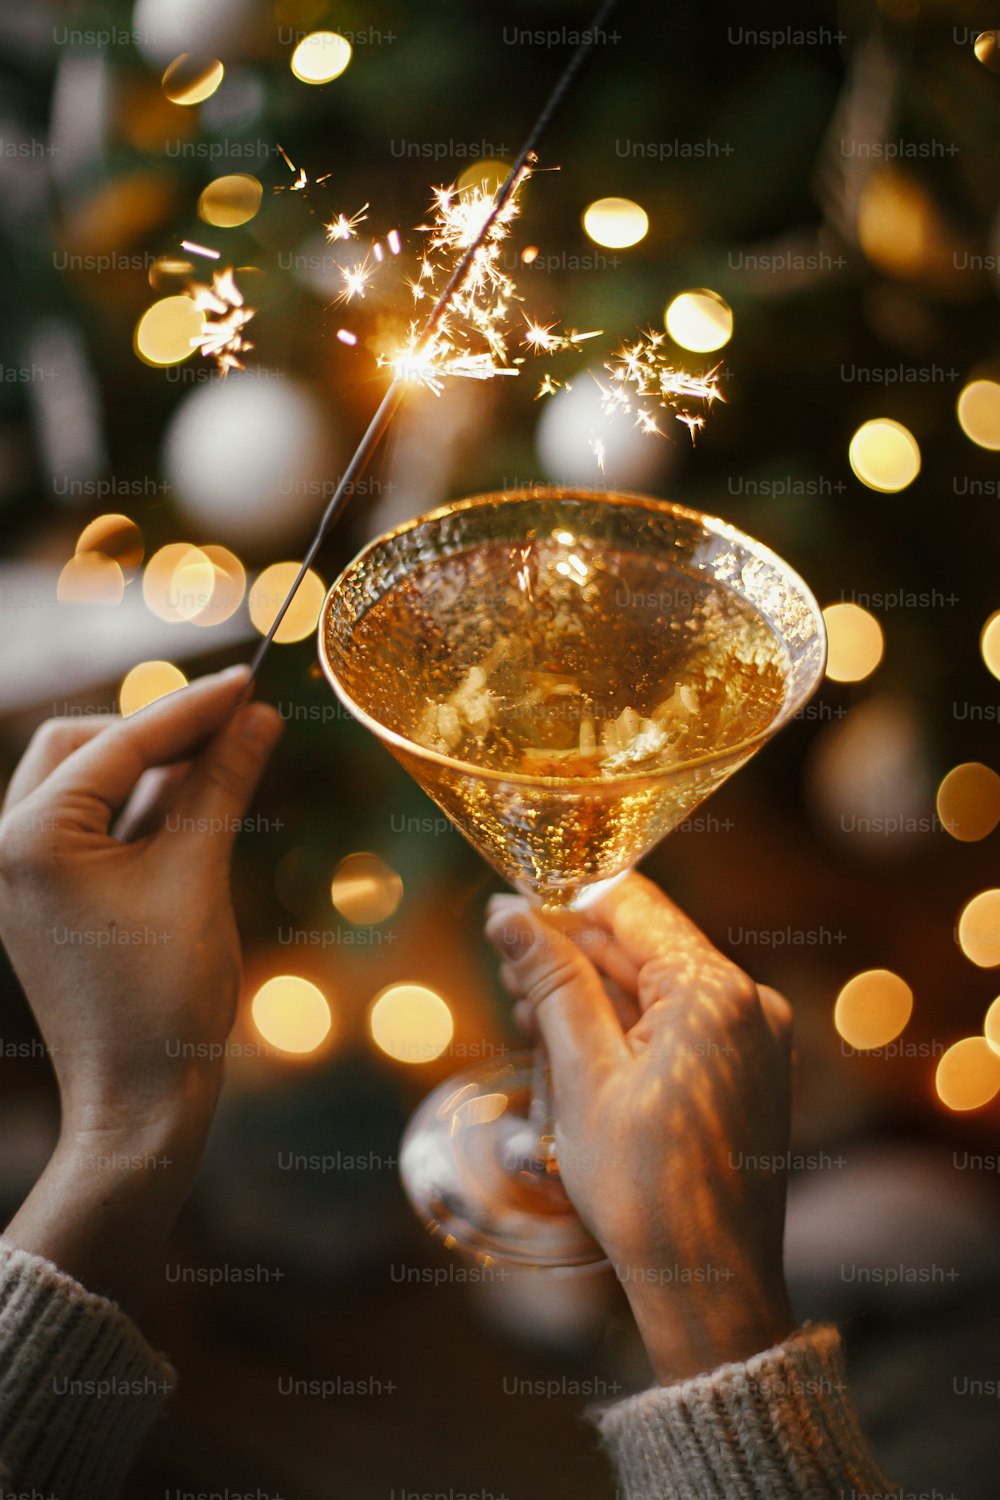 Frohes neues Jahr!! Frau feiert mit Feuerwerk und Champagnerglas auf dem Hintergrund von Weihnachtsbaum und leuchtendem Stern. Hände halten brennende Wunderkerze und trinken. Atmosphärischer Moment